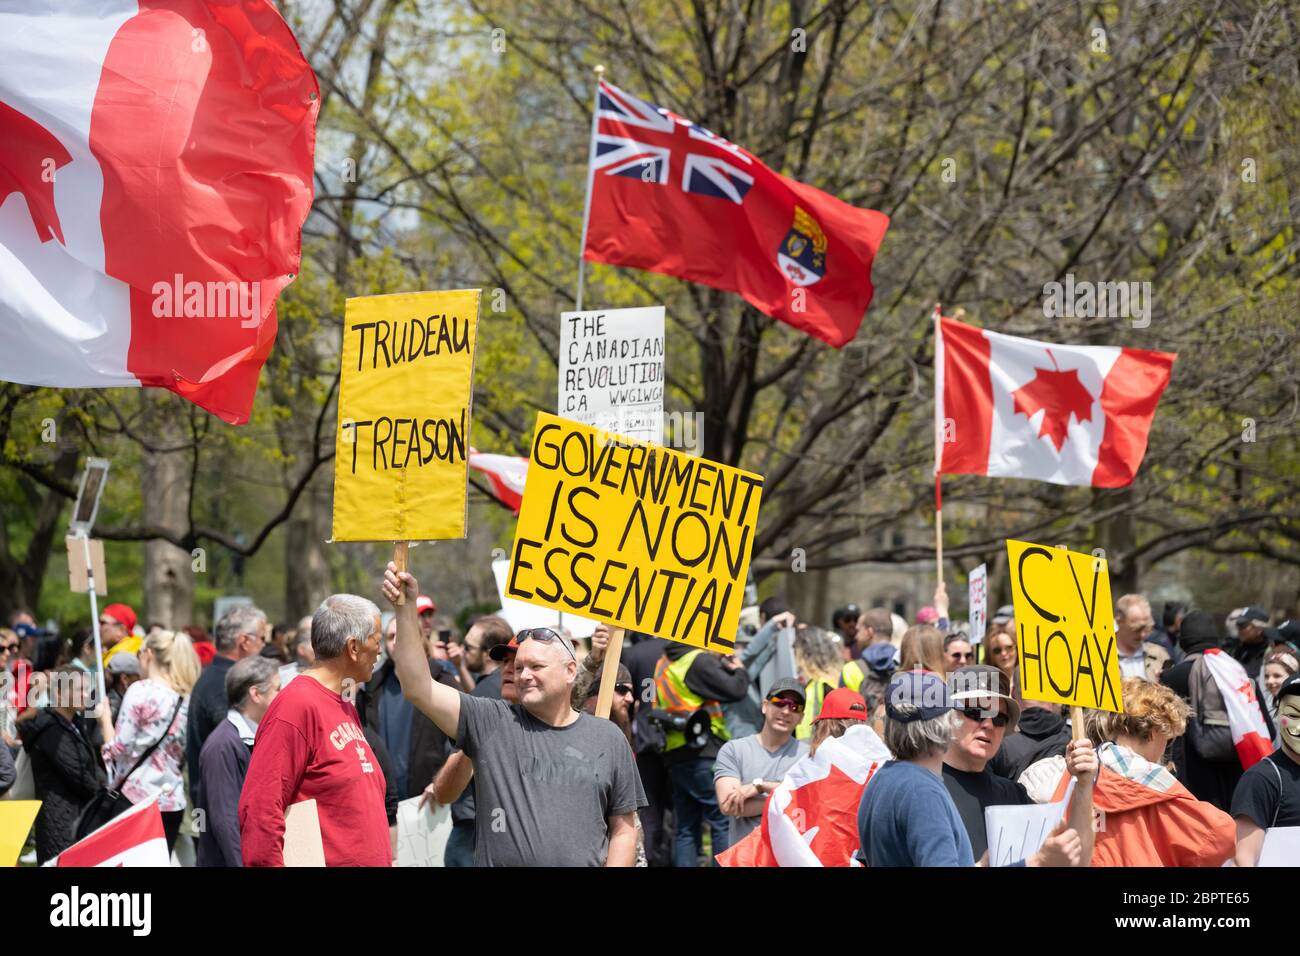 Demonstranten sprechen sich bei einer Kundgebung gegen die Regierung im Queen's Park aus, um die COVID-19-Abschaltung in Toronto zu beenden. Stockfoto